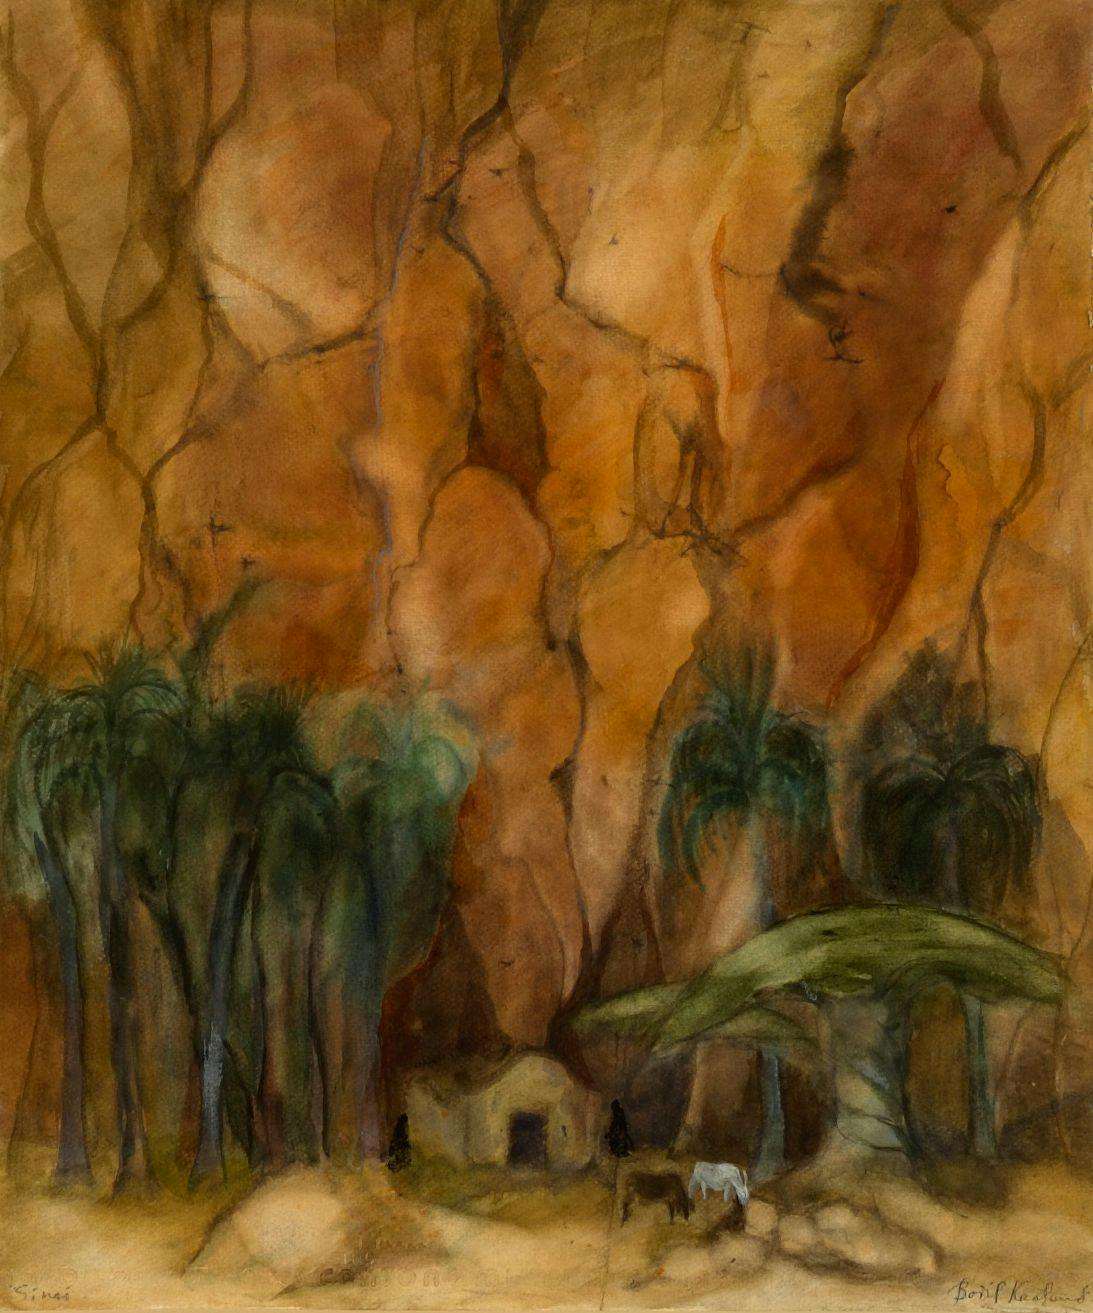 Artwork: Bodil Kaalund, Sinai, 1984